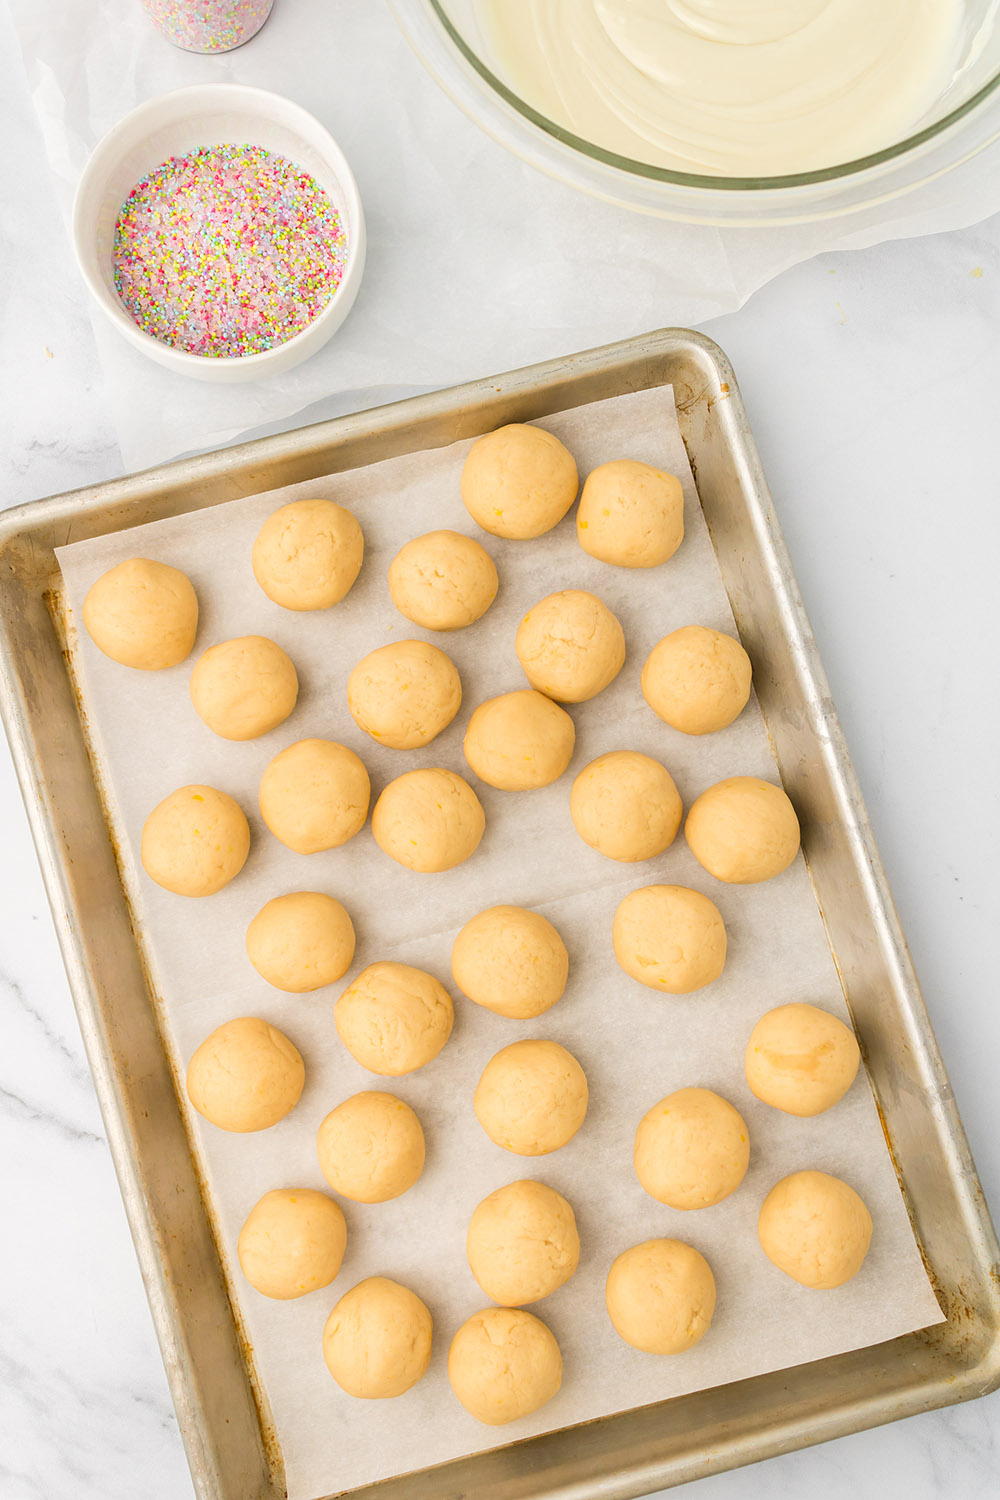 Lemon oreo balls on a baking sheet.